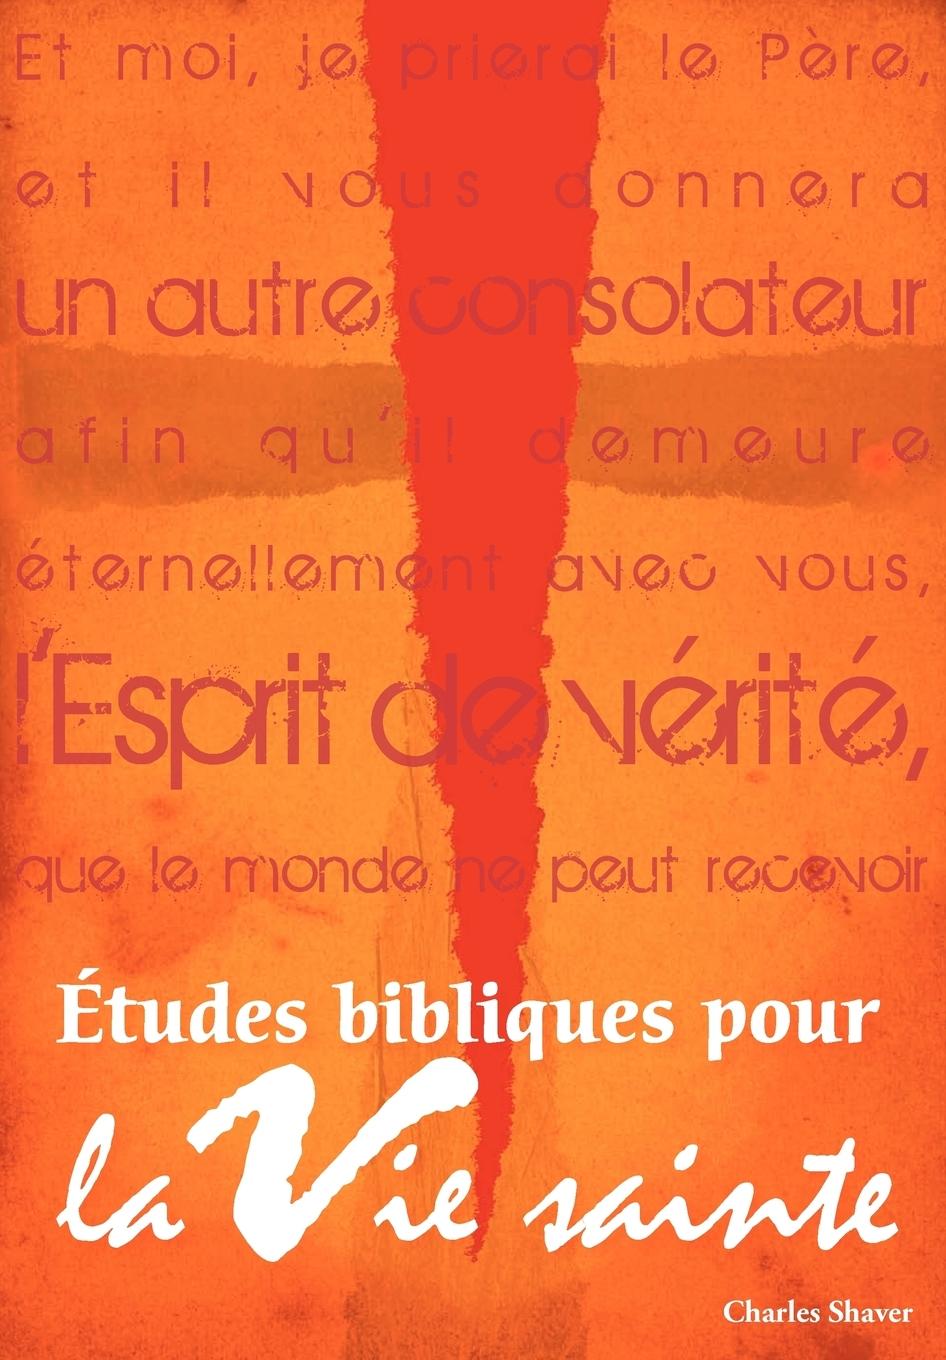 Études bibliques pour la vie sainte (French - Shaver, Charles  Chic